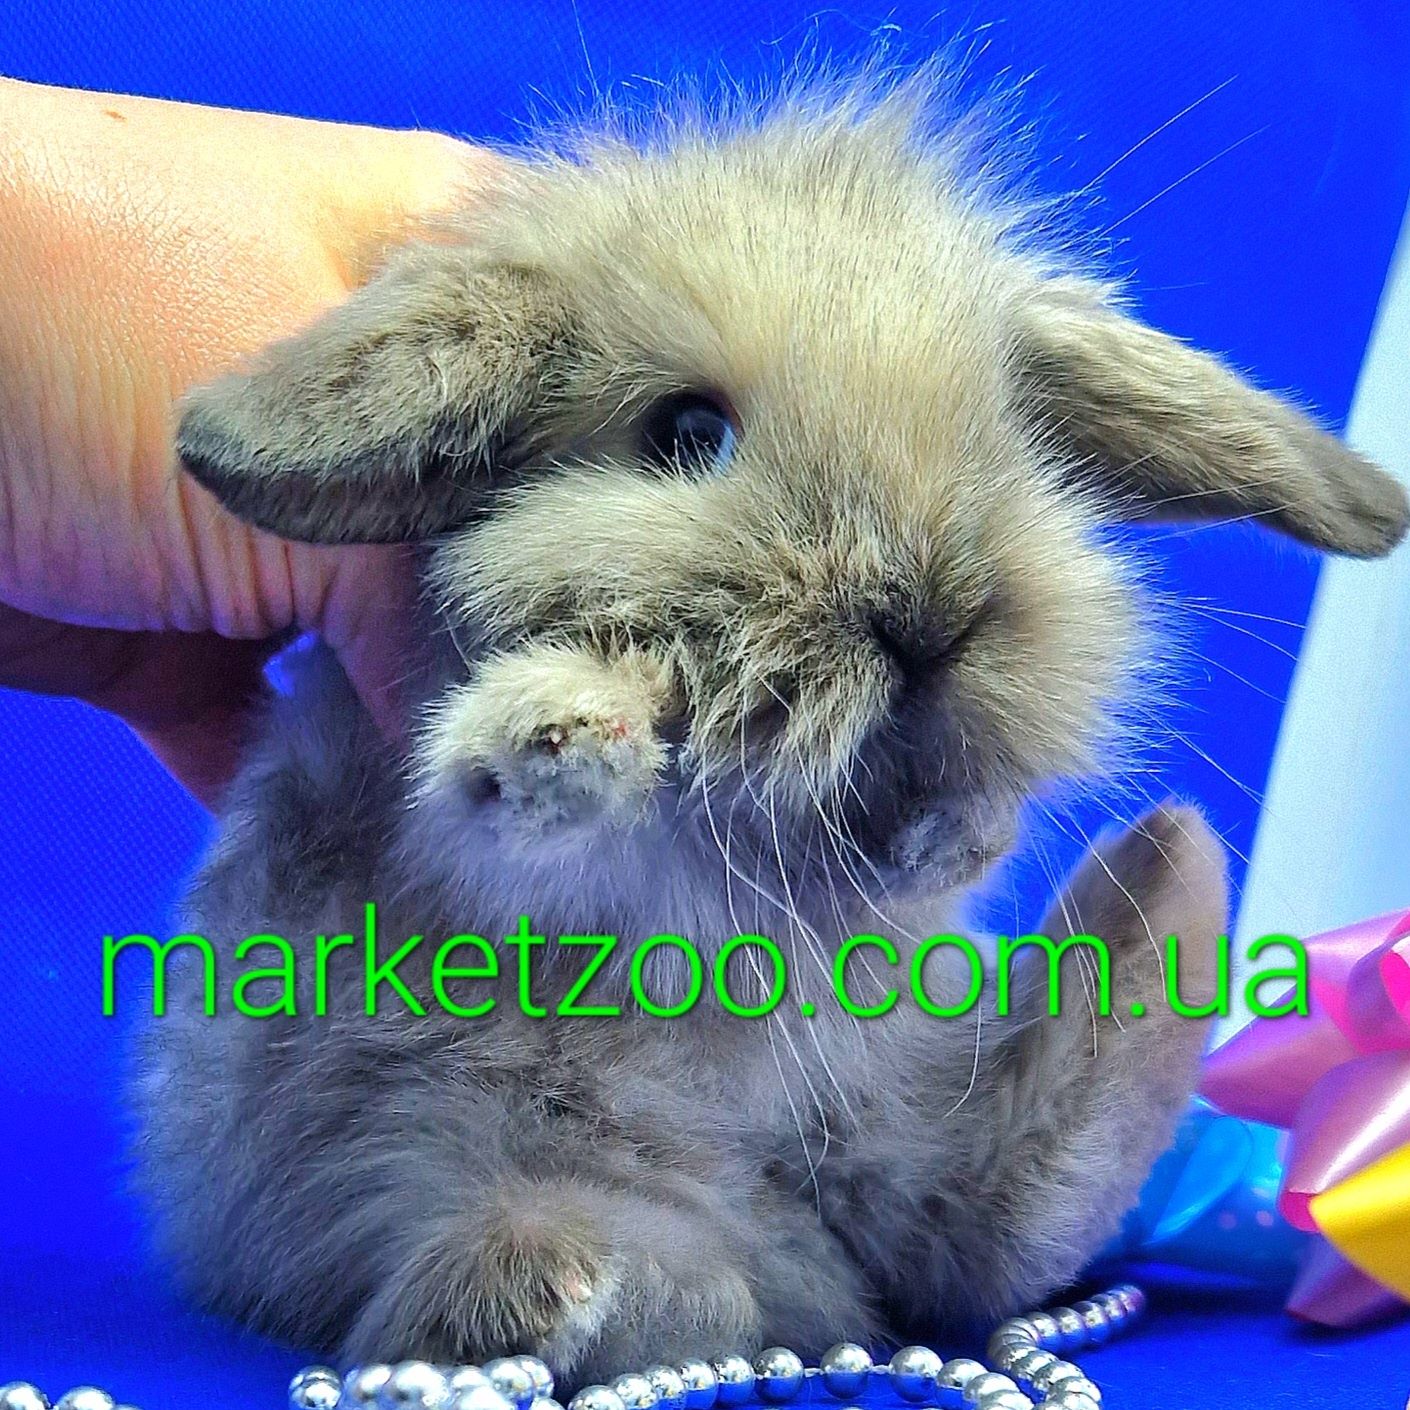 Карликовые кролики,карликовый кролик,вислоухий баранчик mini lop сиамс